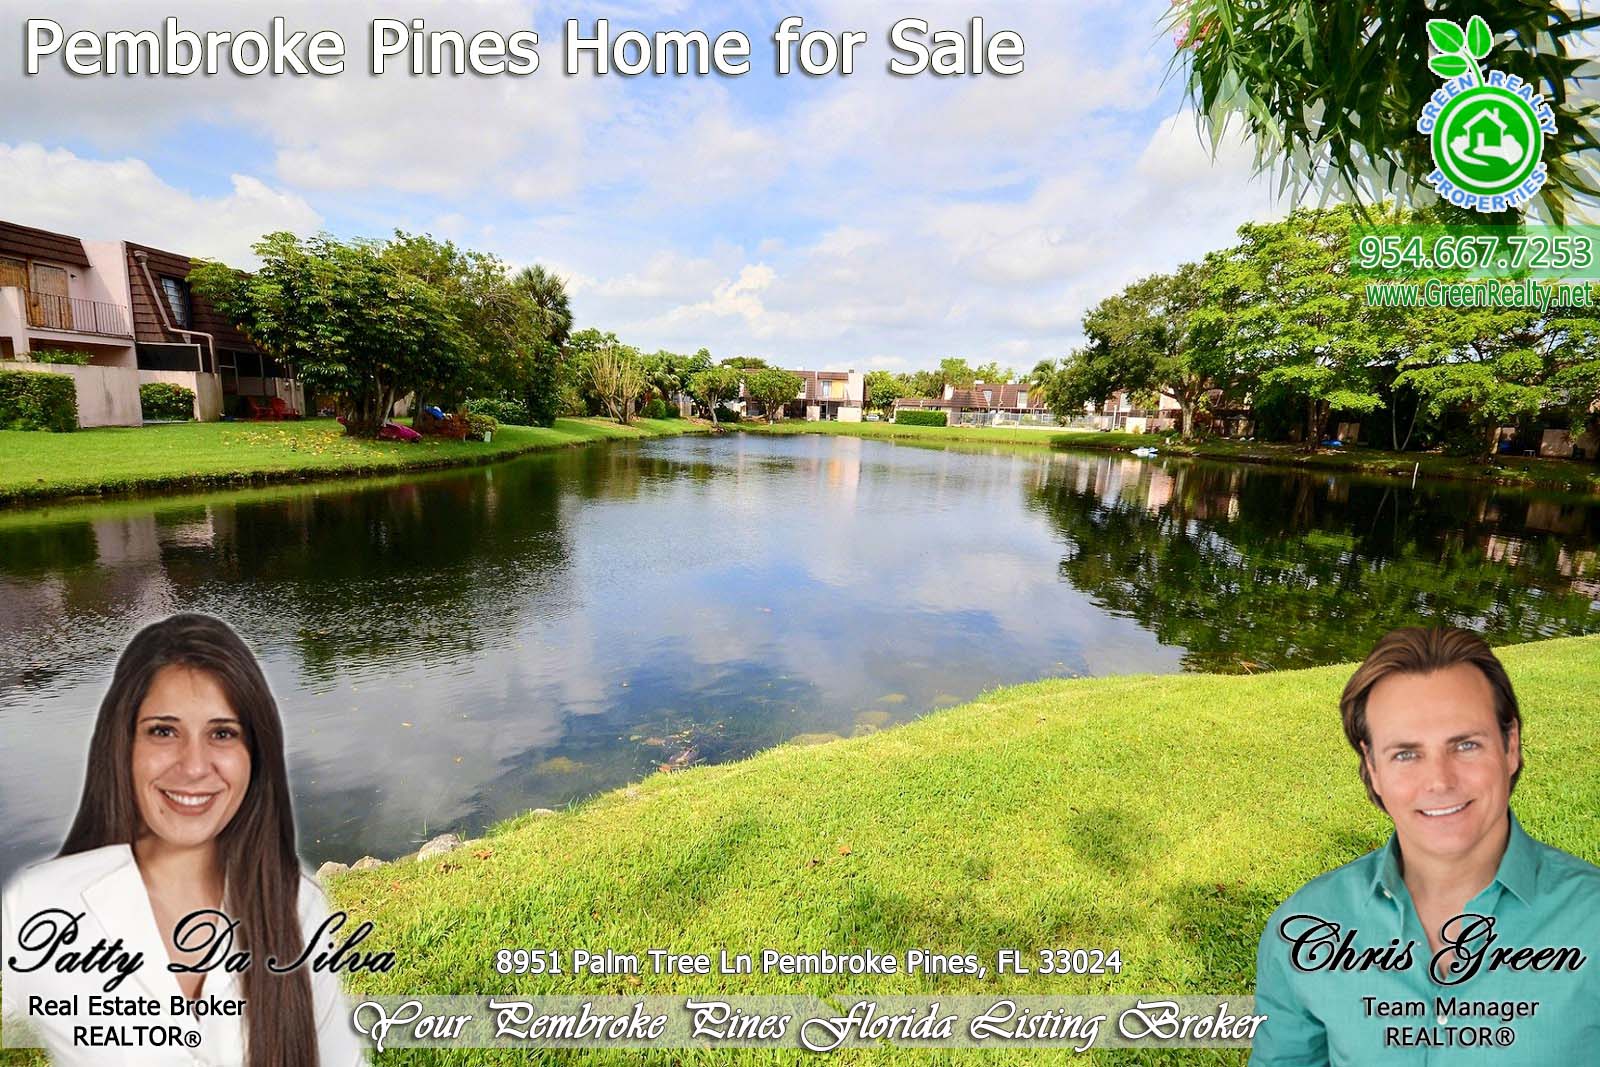 Pembroke Pines Homes For Sale - 8951 Palm Tree Lane (5)